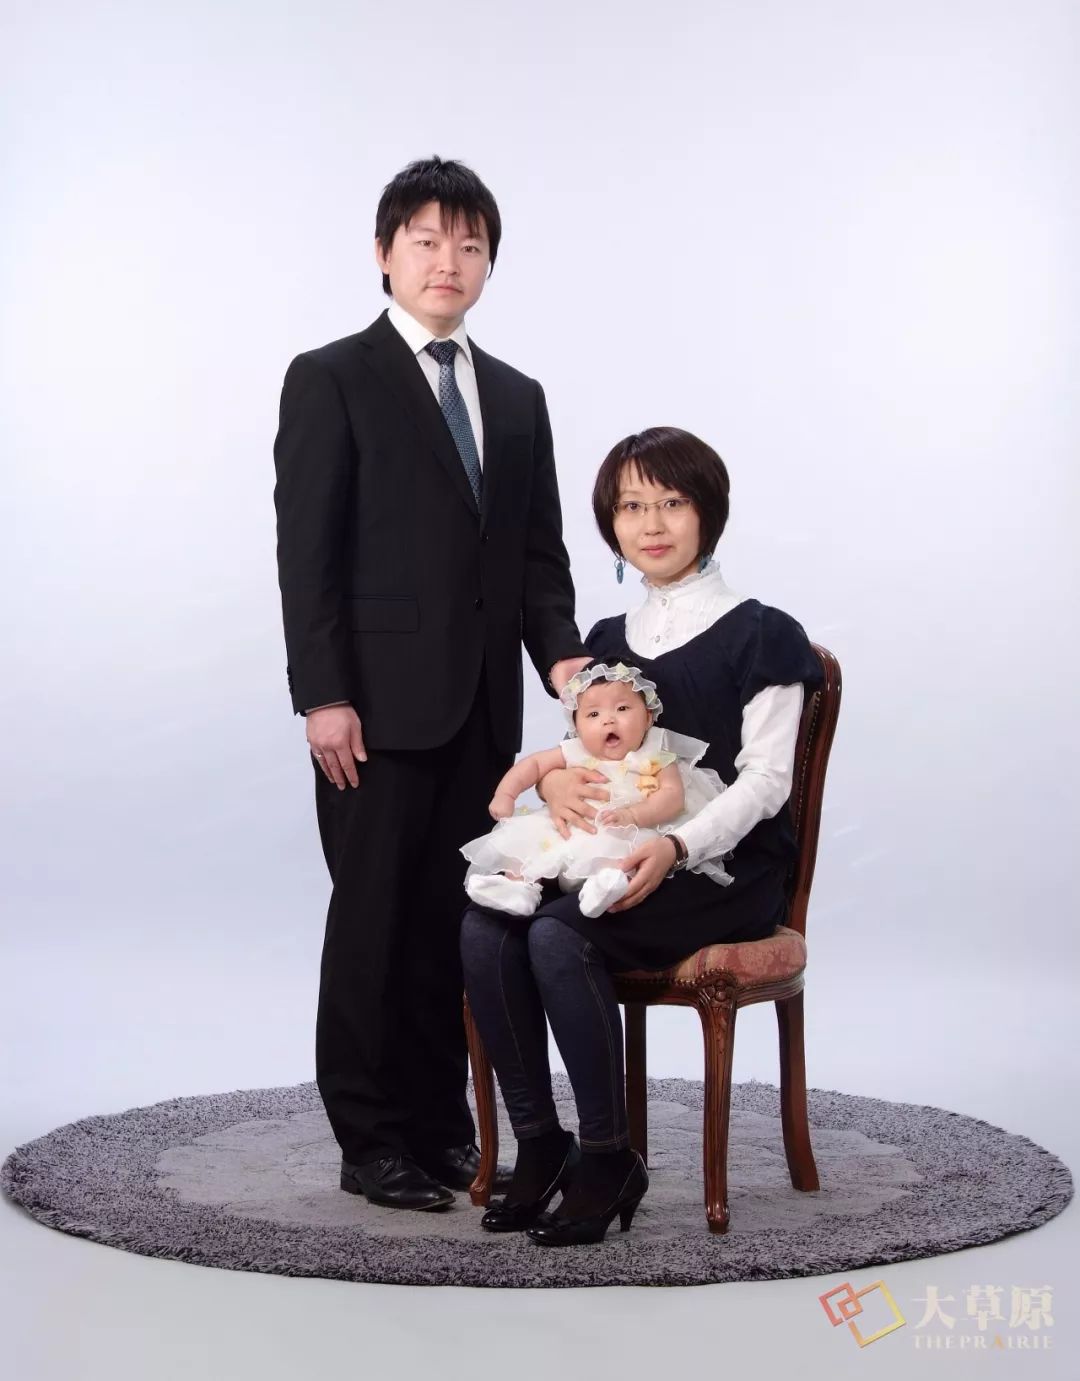 这对蒙古族夫妻放弃日本优渥生活，回锡林郭勒创立天然手工羊脂皂品牌，成功打入日本市场 第4张